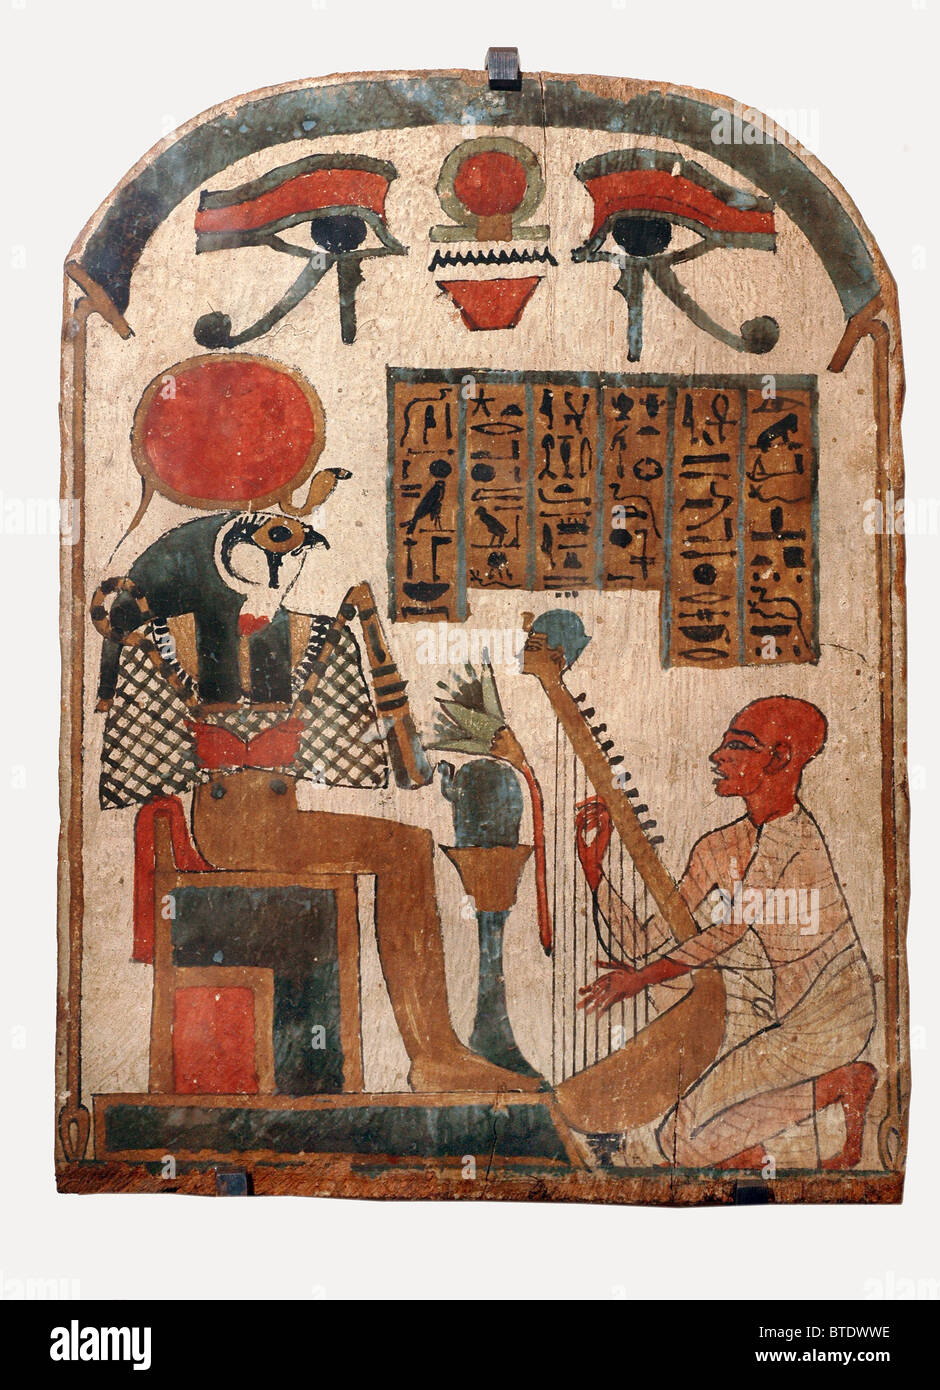 5343. Músico de arpa de adorar al dios Horus, el antiguo dios egipcio del sol, hijo de Osiris e Isis, representado como habiendo Foto de stock